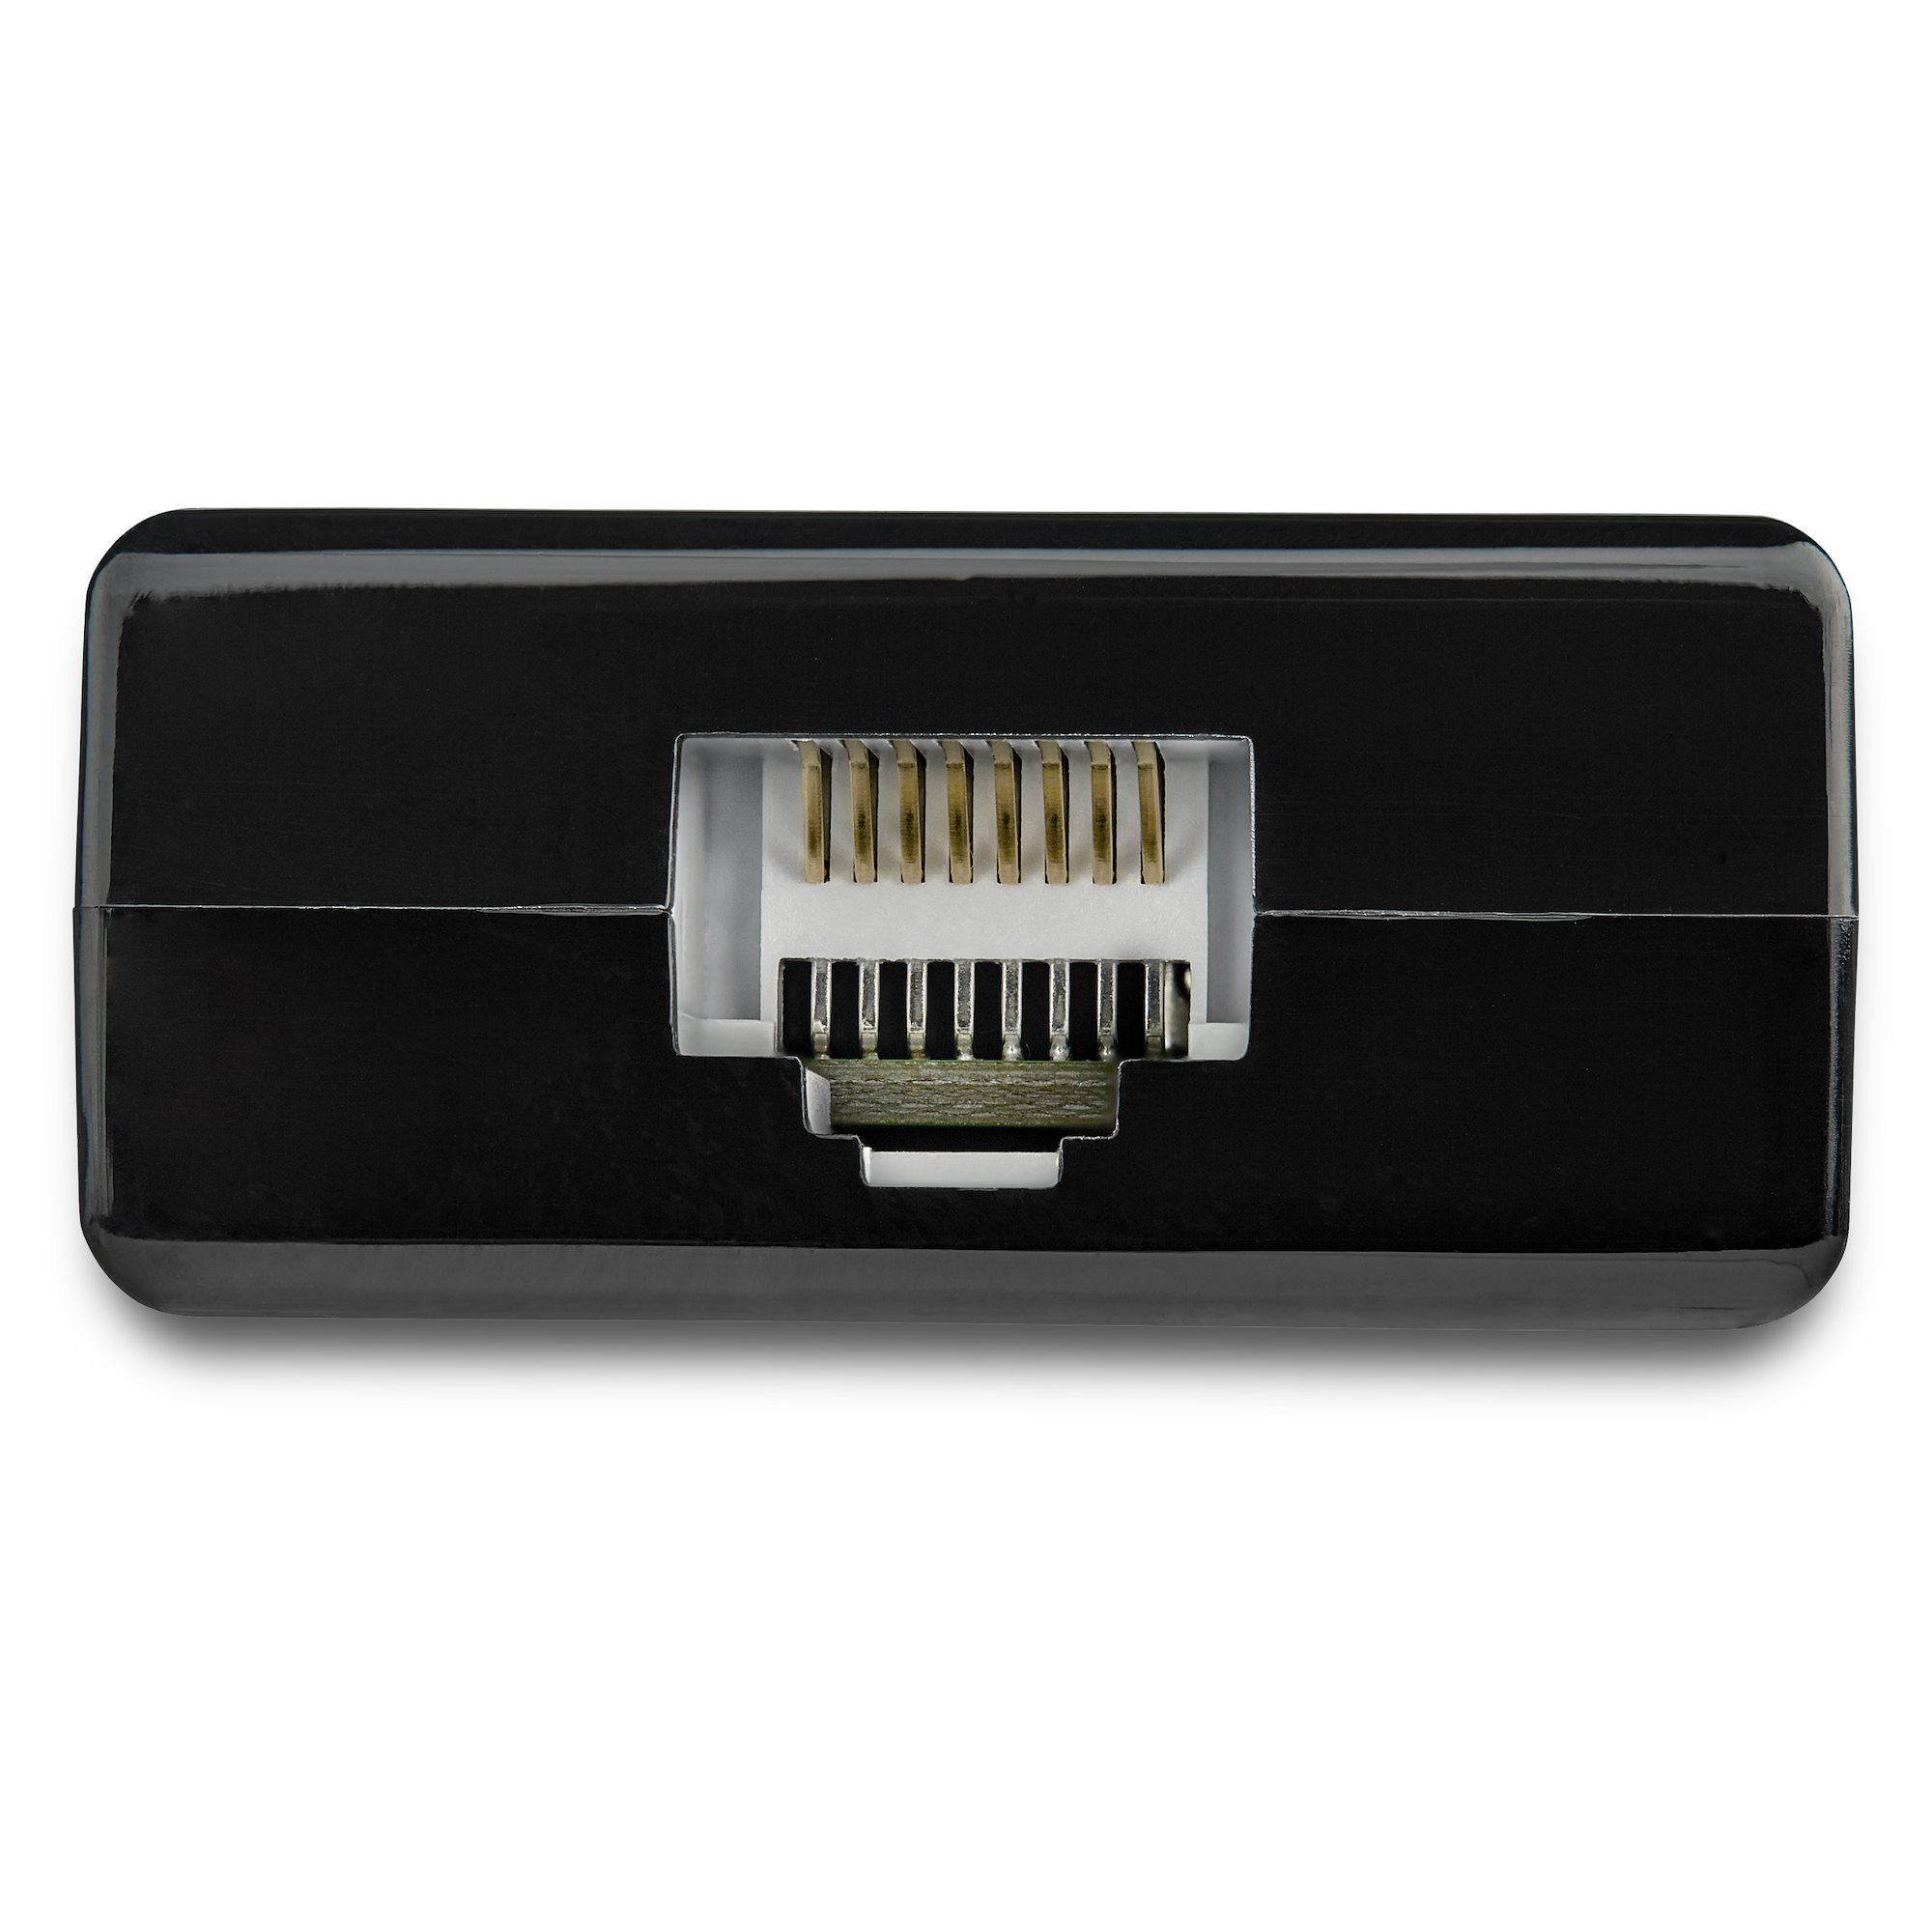 USB 3.0接続ギガビットイーサネット有線LANアダプタ USBハブ内蔵 - USB  USB-C ネットワークアダプタ | 日本